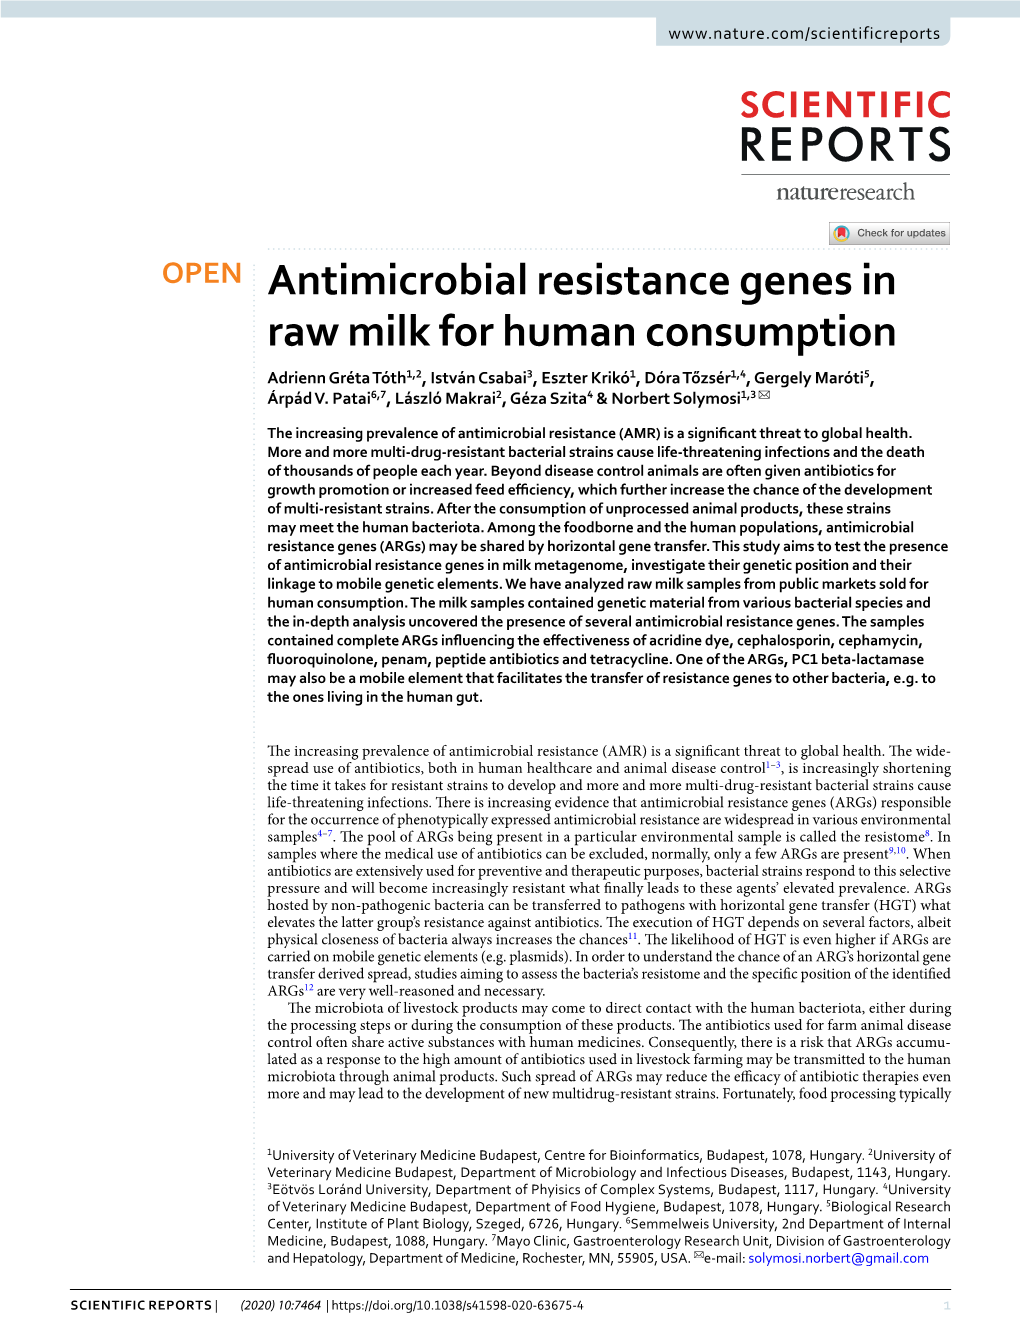 Antimicrobial Resistance Genes in Raw Milk for Human Consumption Adrienn Gréta Tóth1,2, István Csabai3, Eszter Krikó1, Dóra Tőzsér1,4, Gergely Maróti5, Árpád V